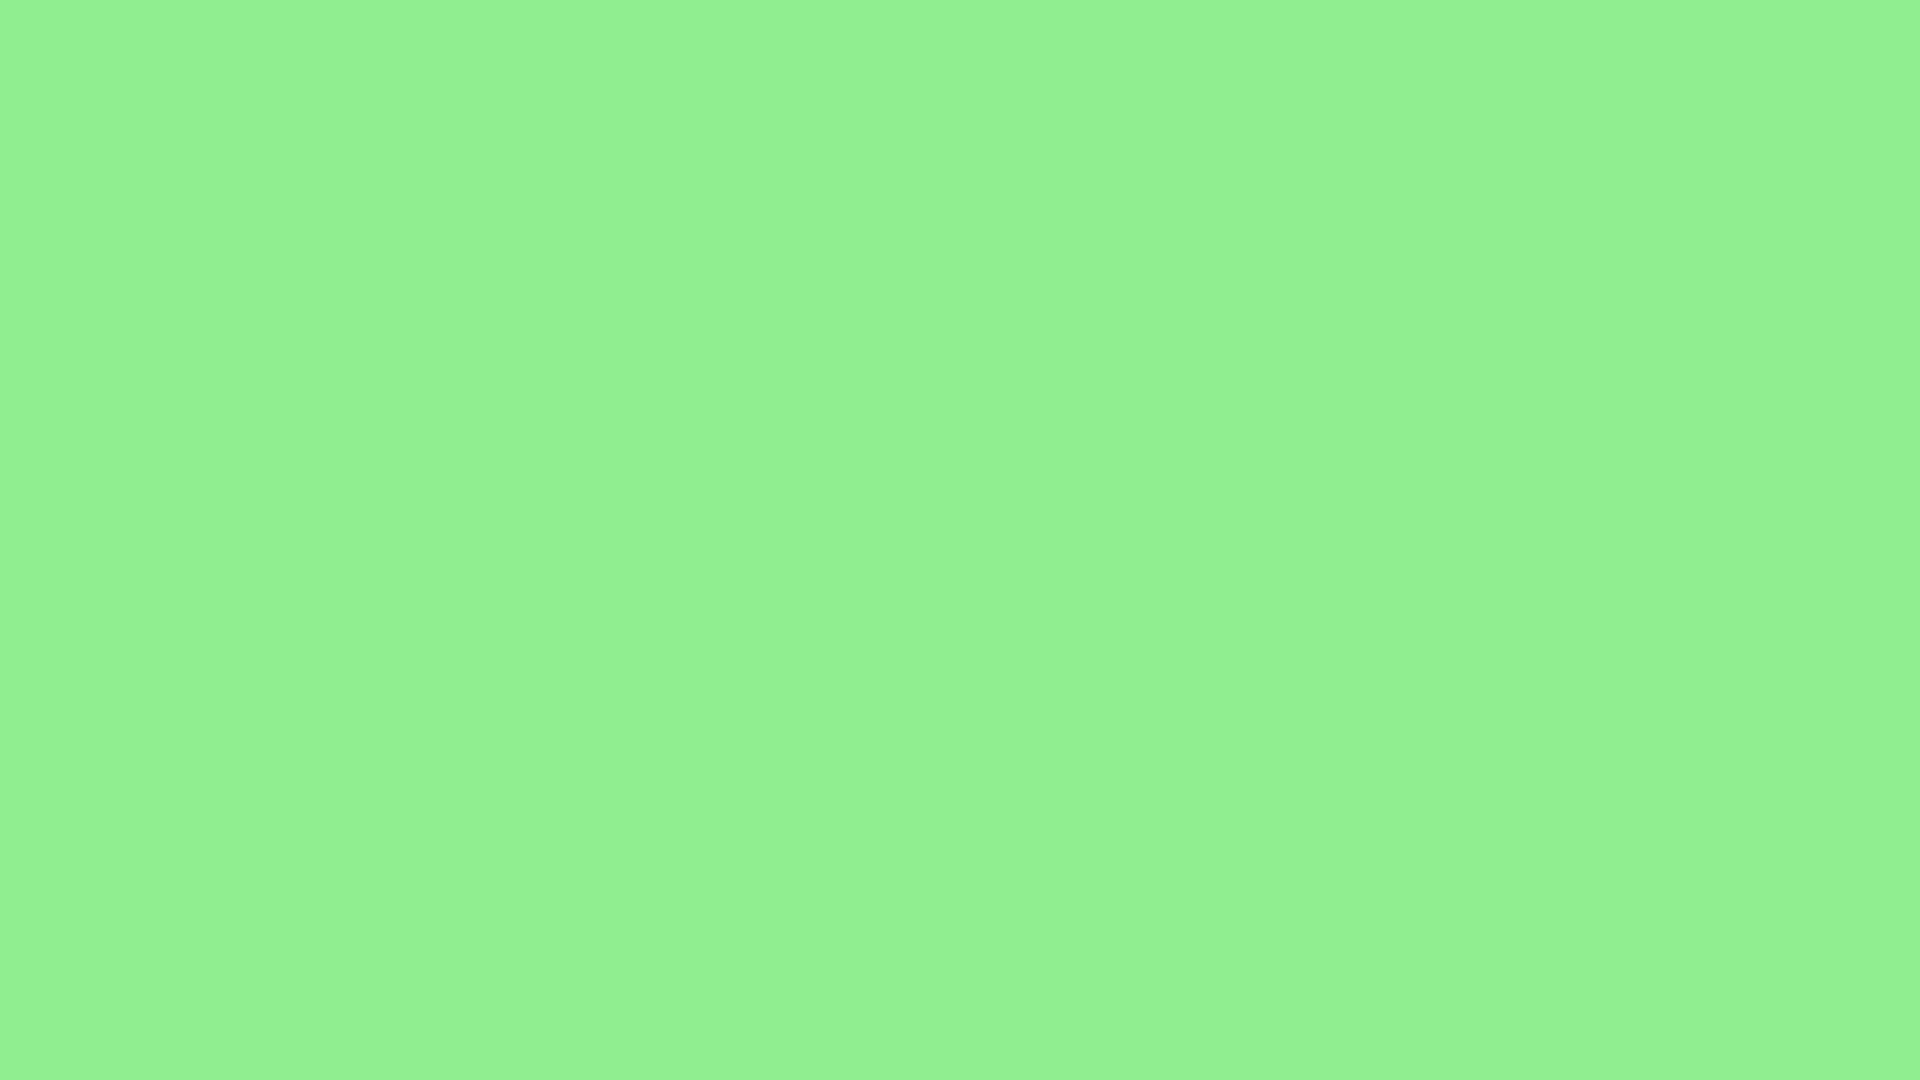 Nền màu xanh lá cây đơn sắc 1920x1080: Nền màu xanh lá cây đơn sắc 1920x1080 là một sự lựa chọn hoàn hảo để cho bạn những trải nghiệm đẹp tuyệt với trên màn hình máy tính của bạn. Hãy thưởng thức những tầng mây trắng xóa bên dưới với một màu xanh lá tươi mới rực rỡ và hòa mình vào một không gian xanh mát.